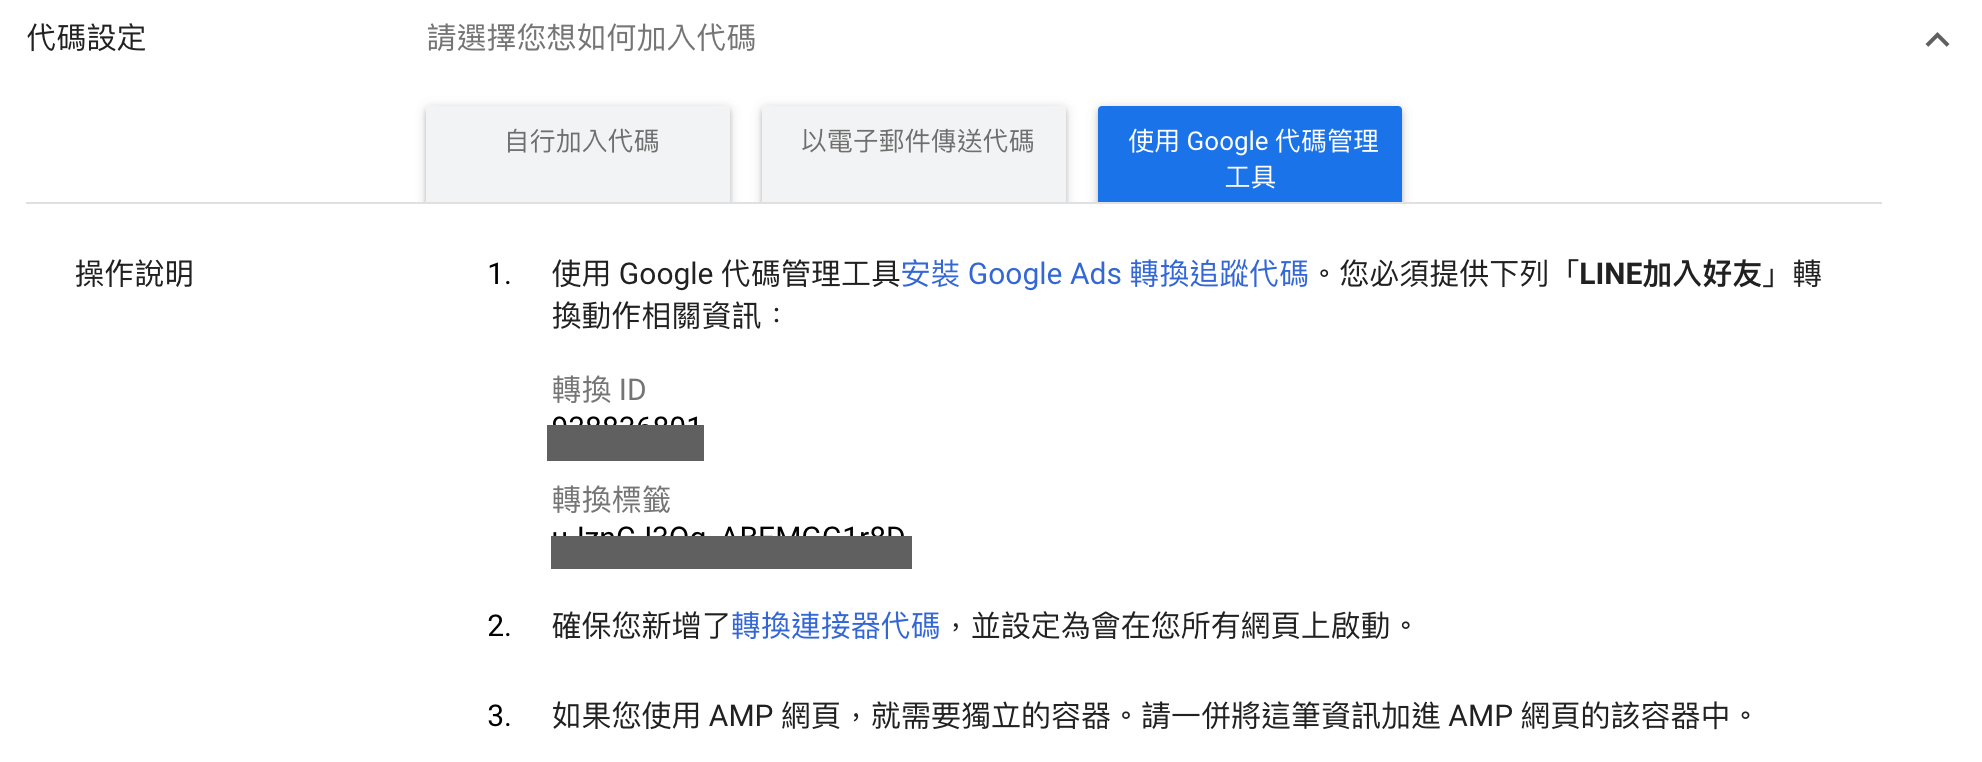 Google Ads 取得GTM用轉換ID與轉換標籤